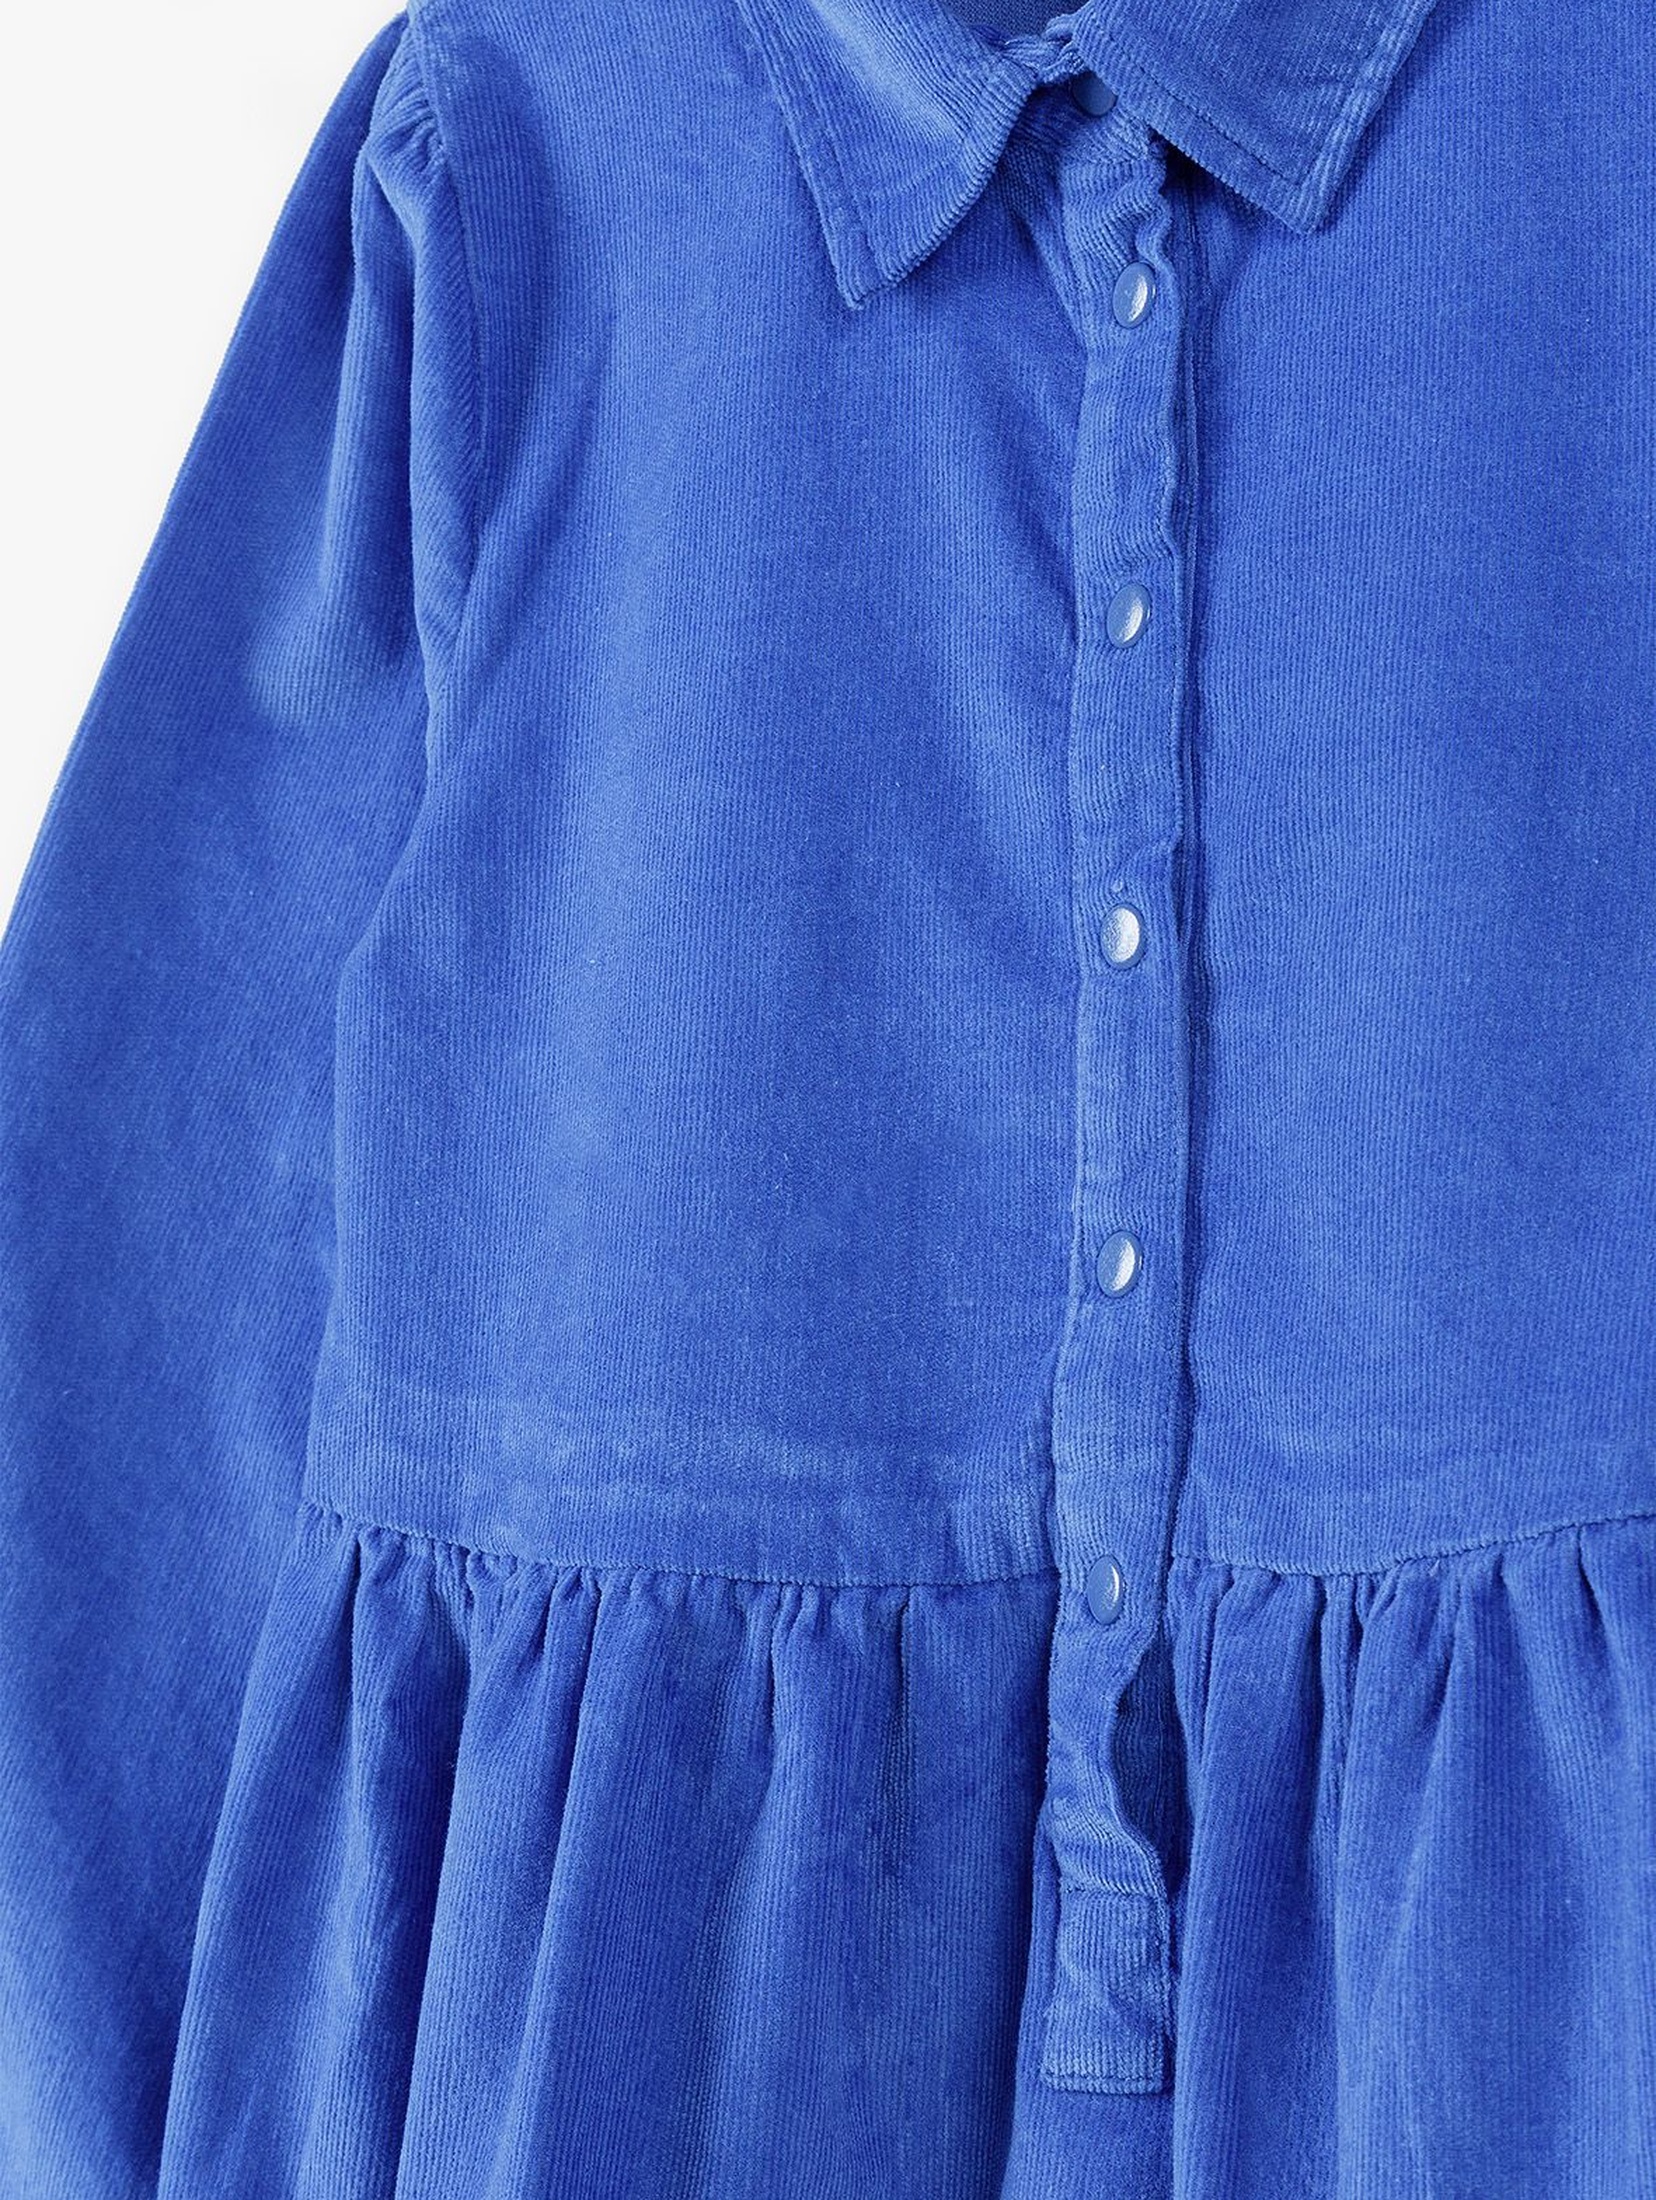 Niebieska sukienka w drobne prążki - długi rękaw